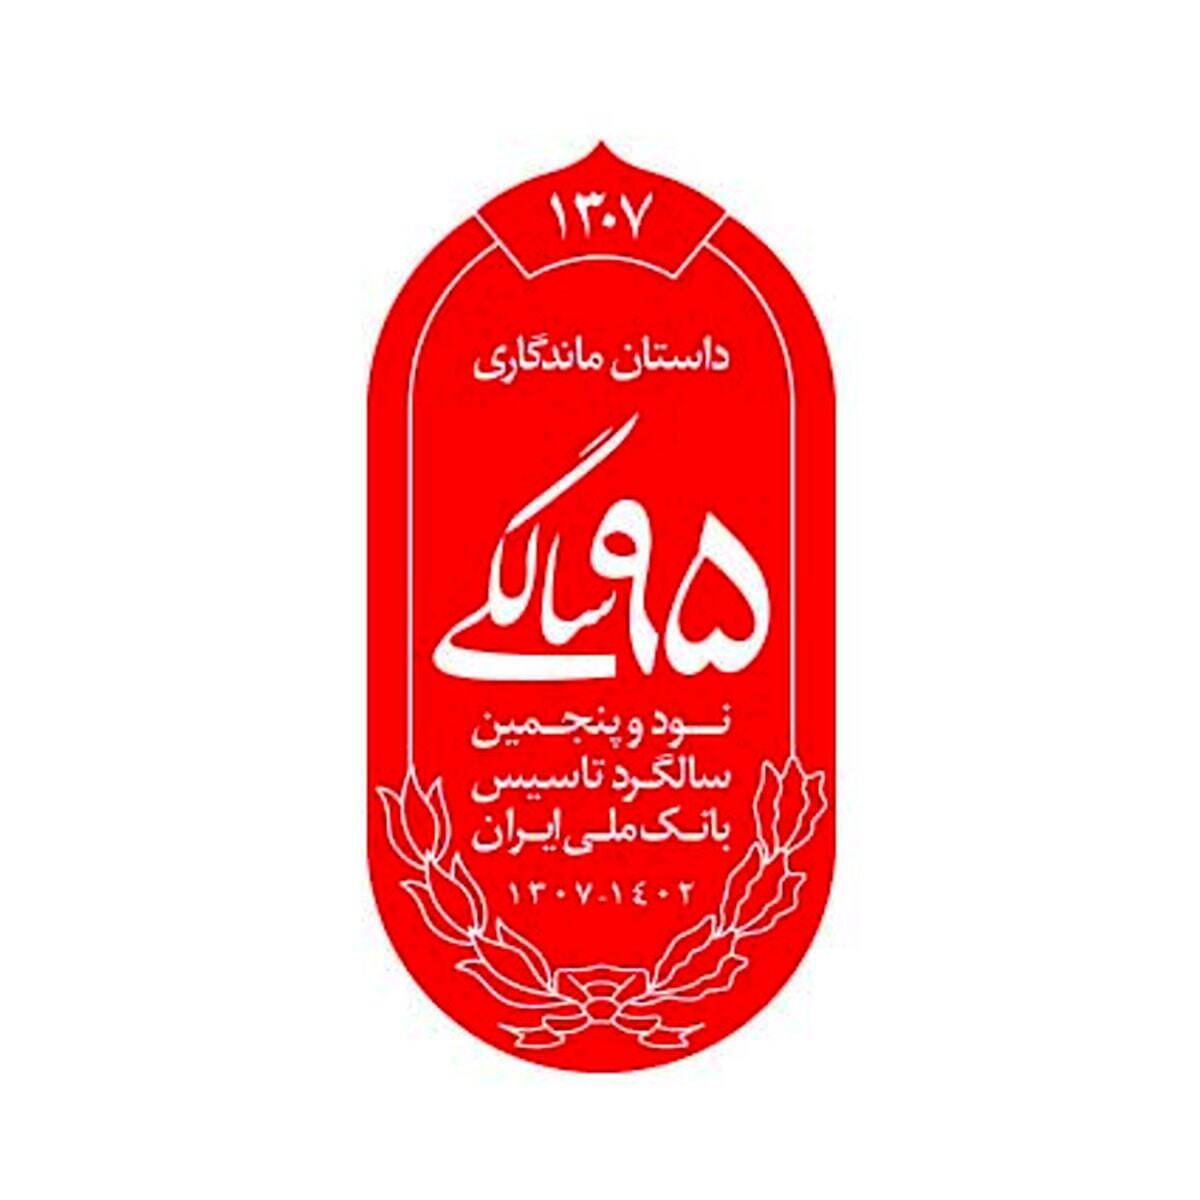 اهمیت و جایگاه بانک ملی ایران در نظام اقتصاد ایران با تاکید بر قدمت بانک ملی ایران